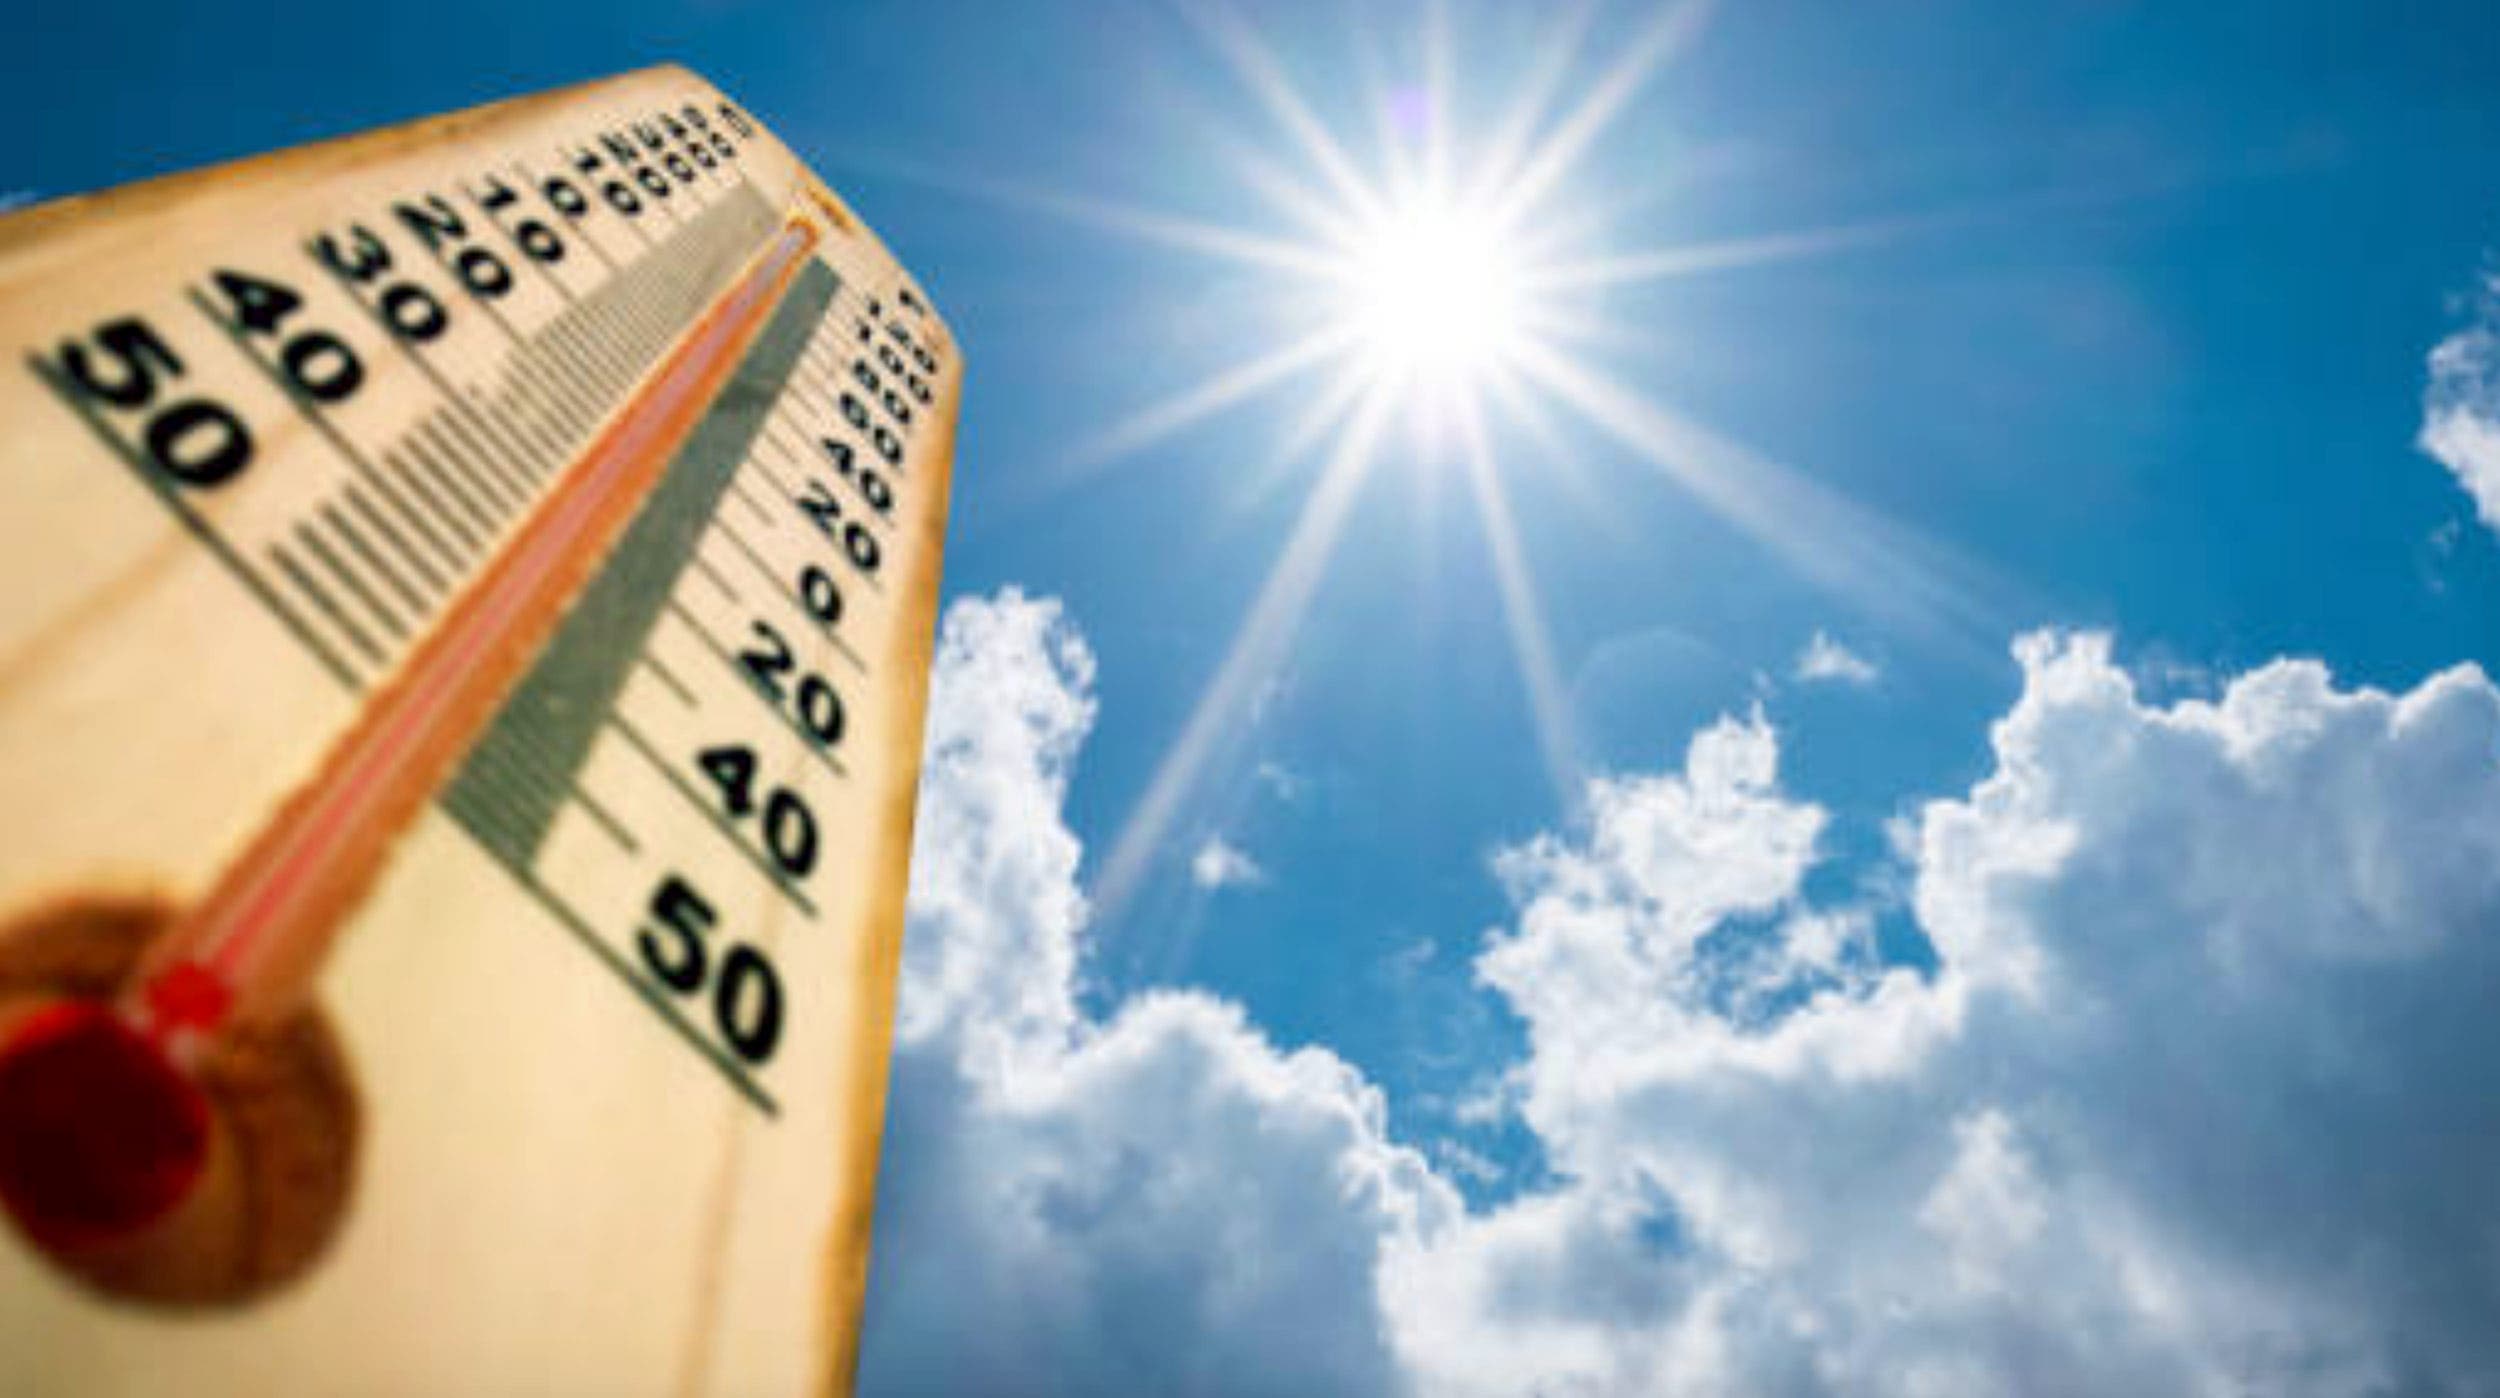 Morelos: Calor extremo - Dominará el calor en esta semana